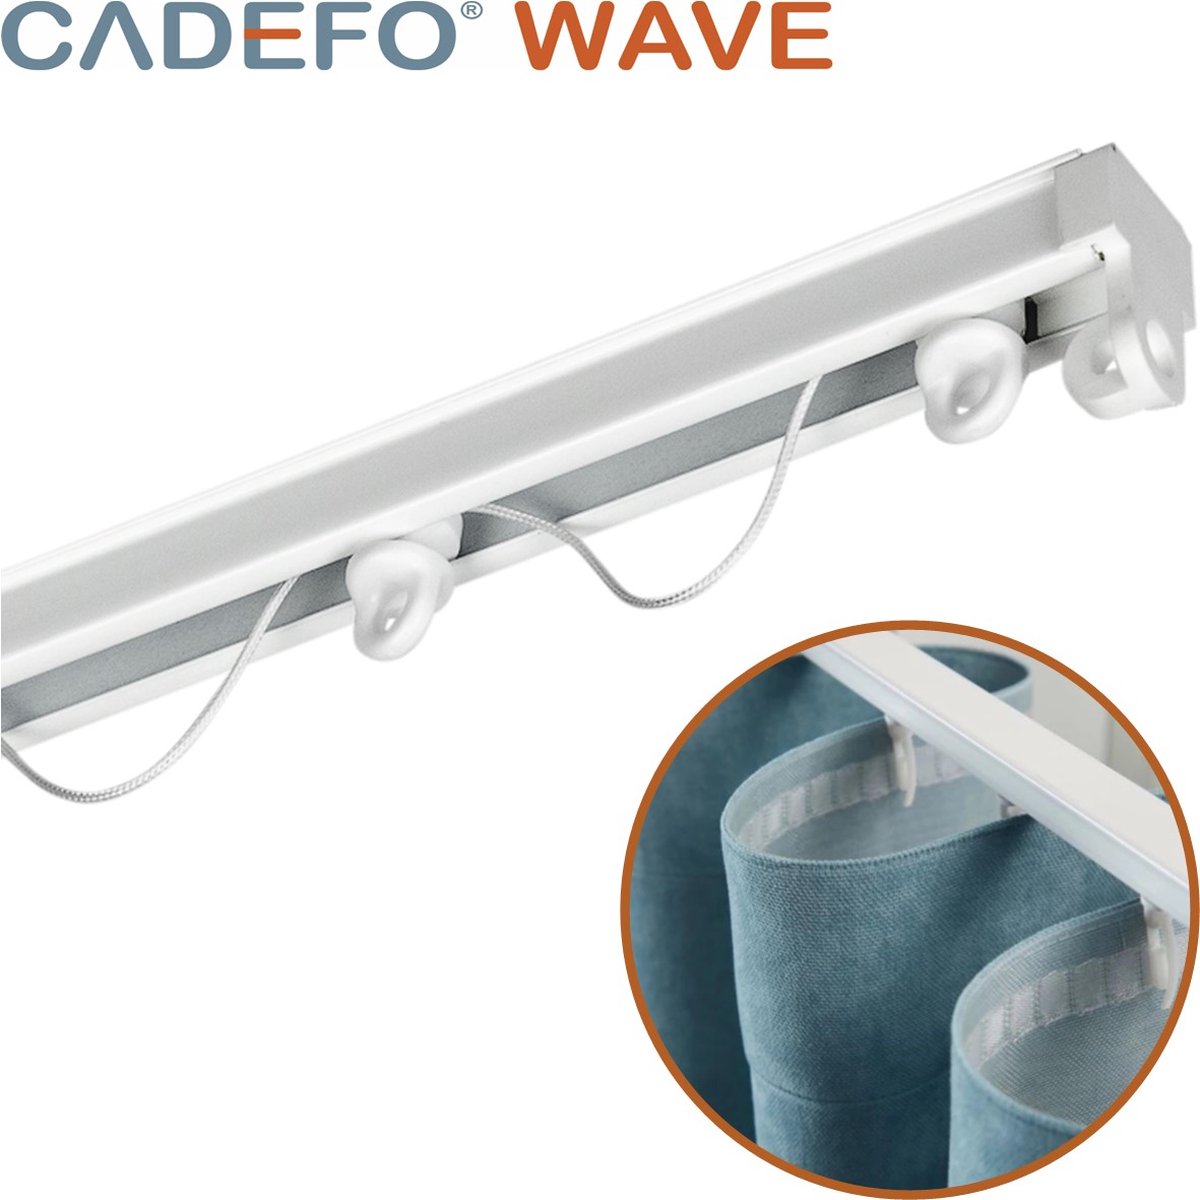 CADEFO WAVE (501 - 550 cm) Gordijnrails - Compleet op maat! - UIT 1 STUK - Leverbaar tot 6 meter - Plafondbevestiging - Lengte 503 cm